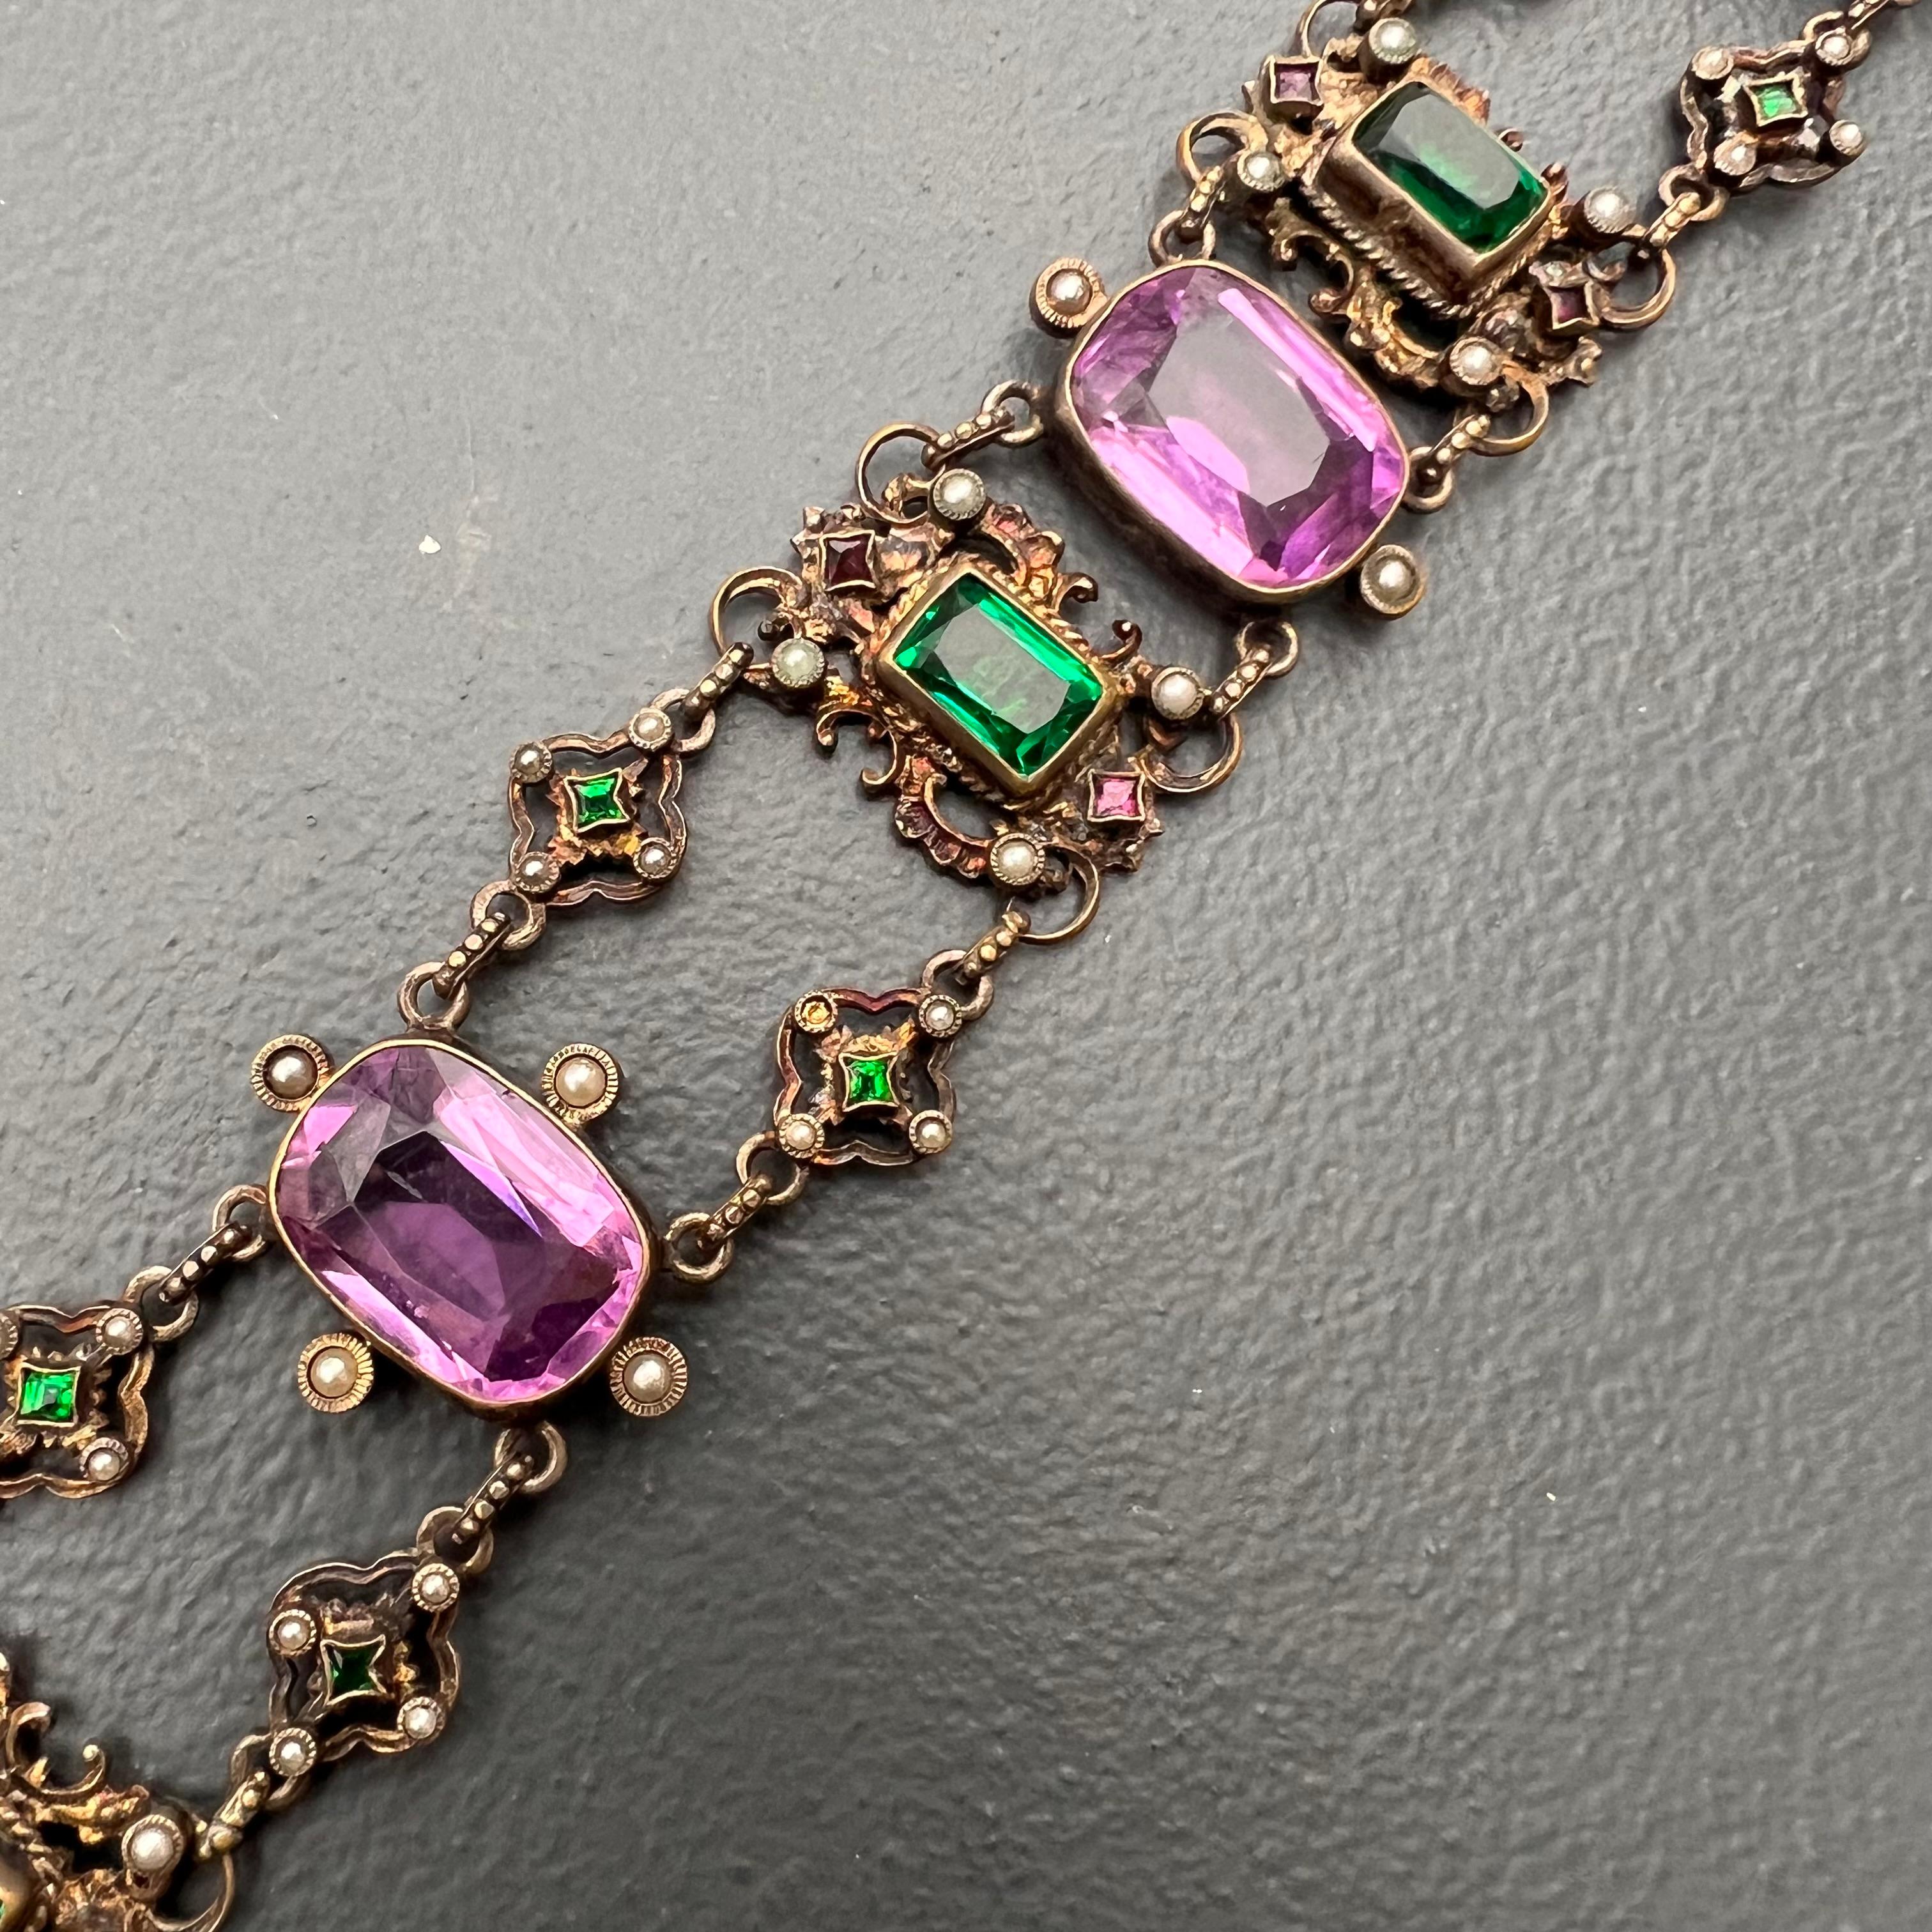 1830s jewelry